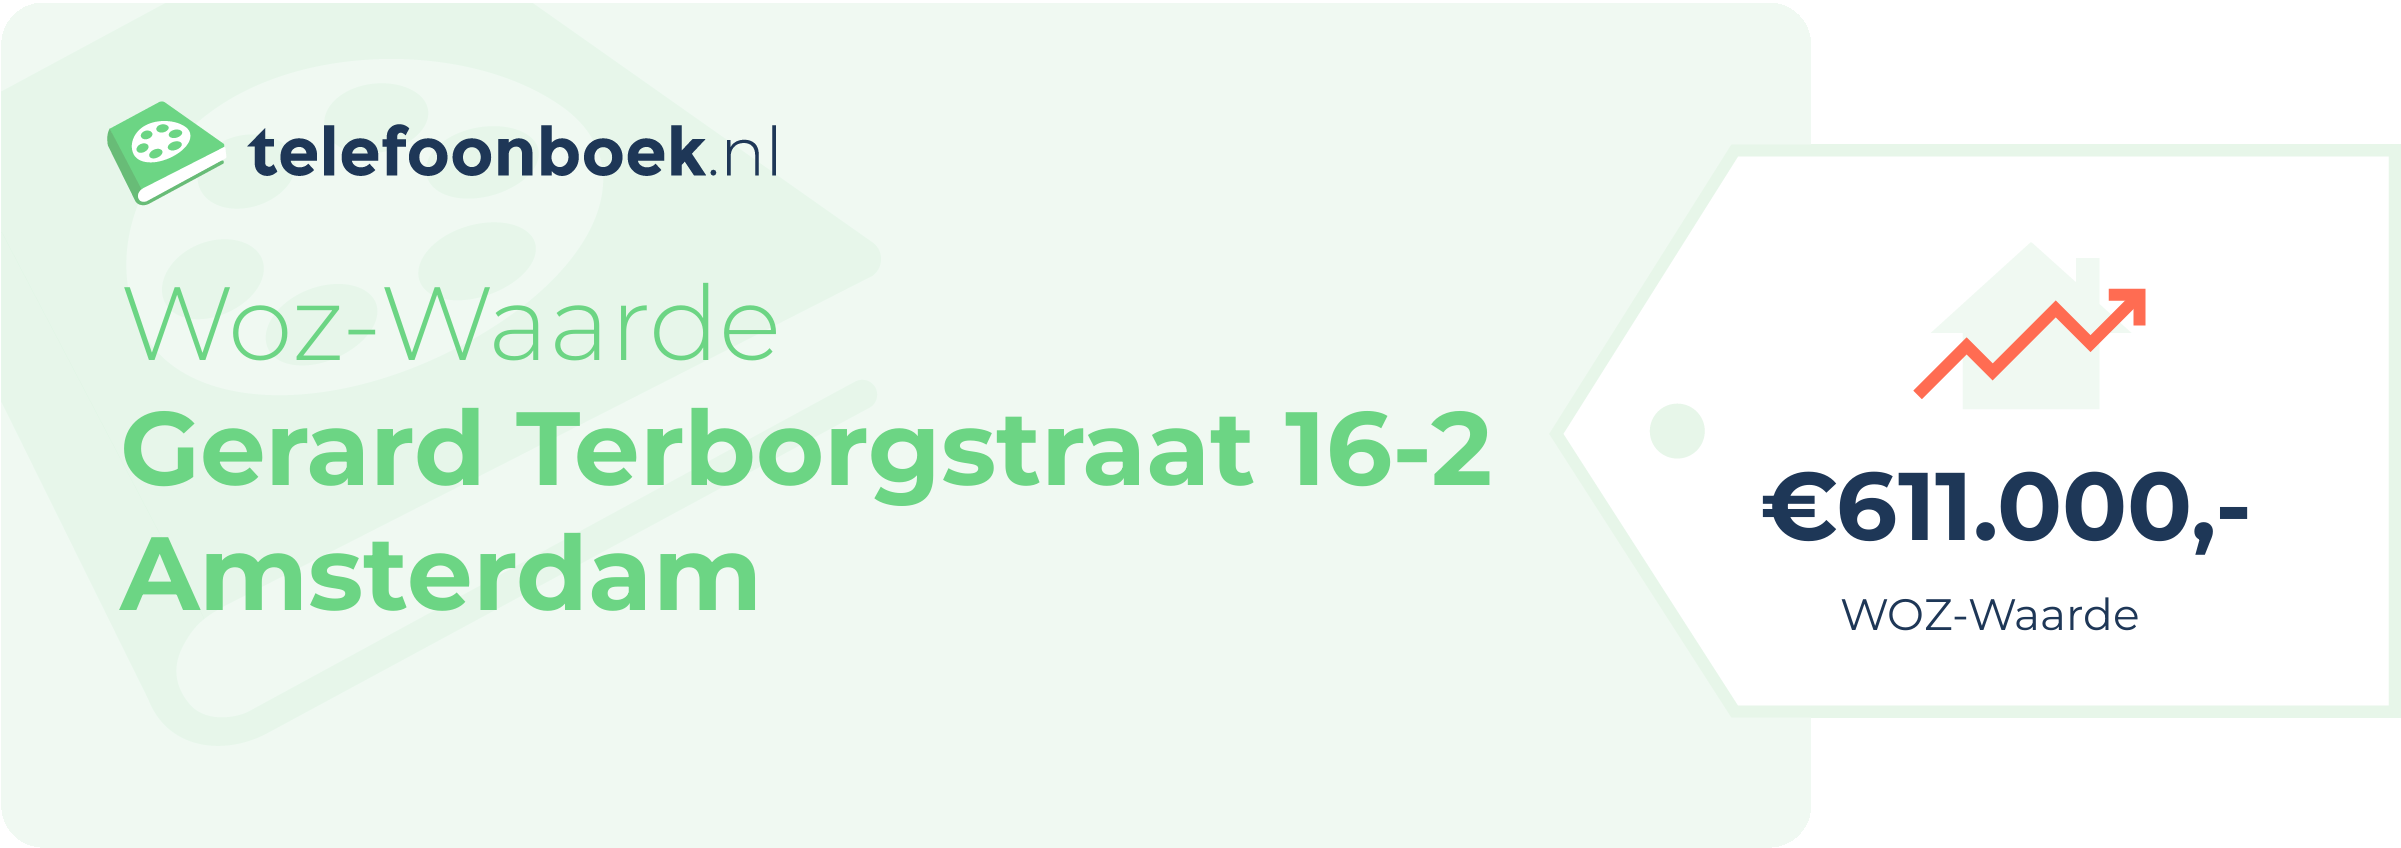 WOZ-waarde Gerard Terborgstraat 16-2 Amsterdam